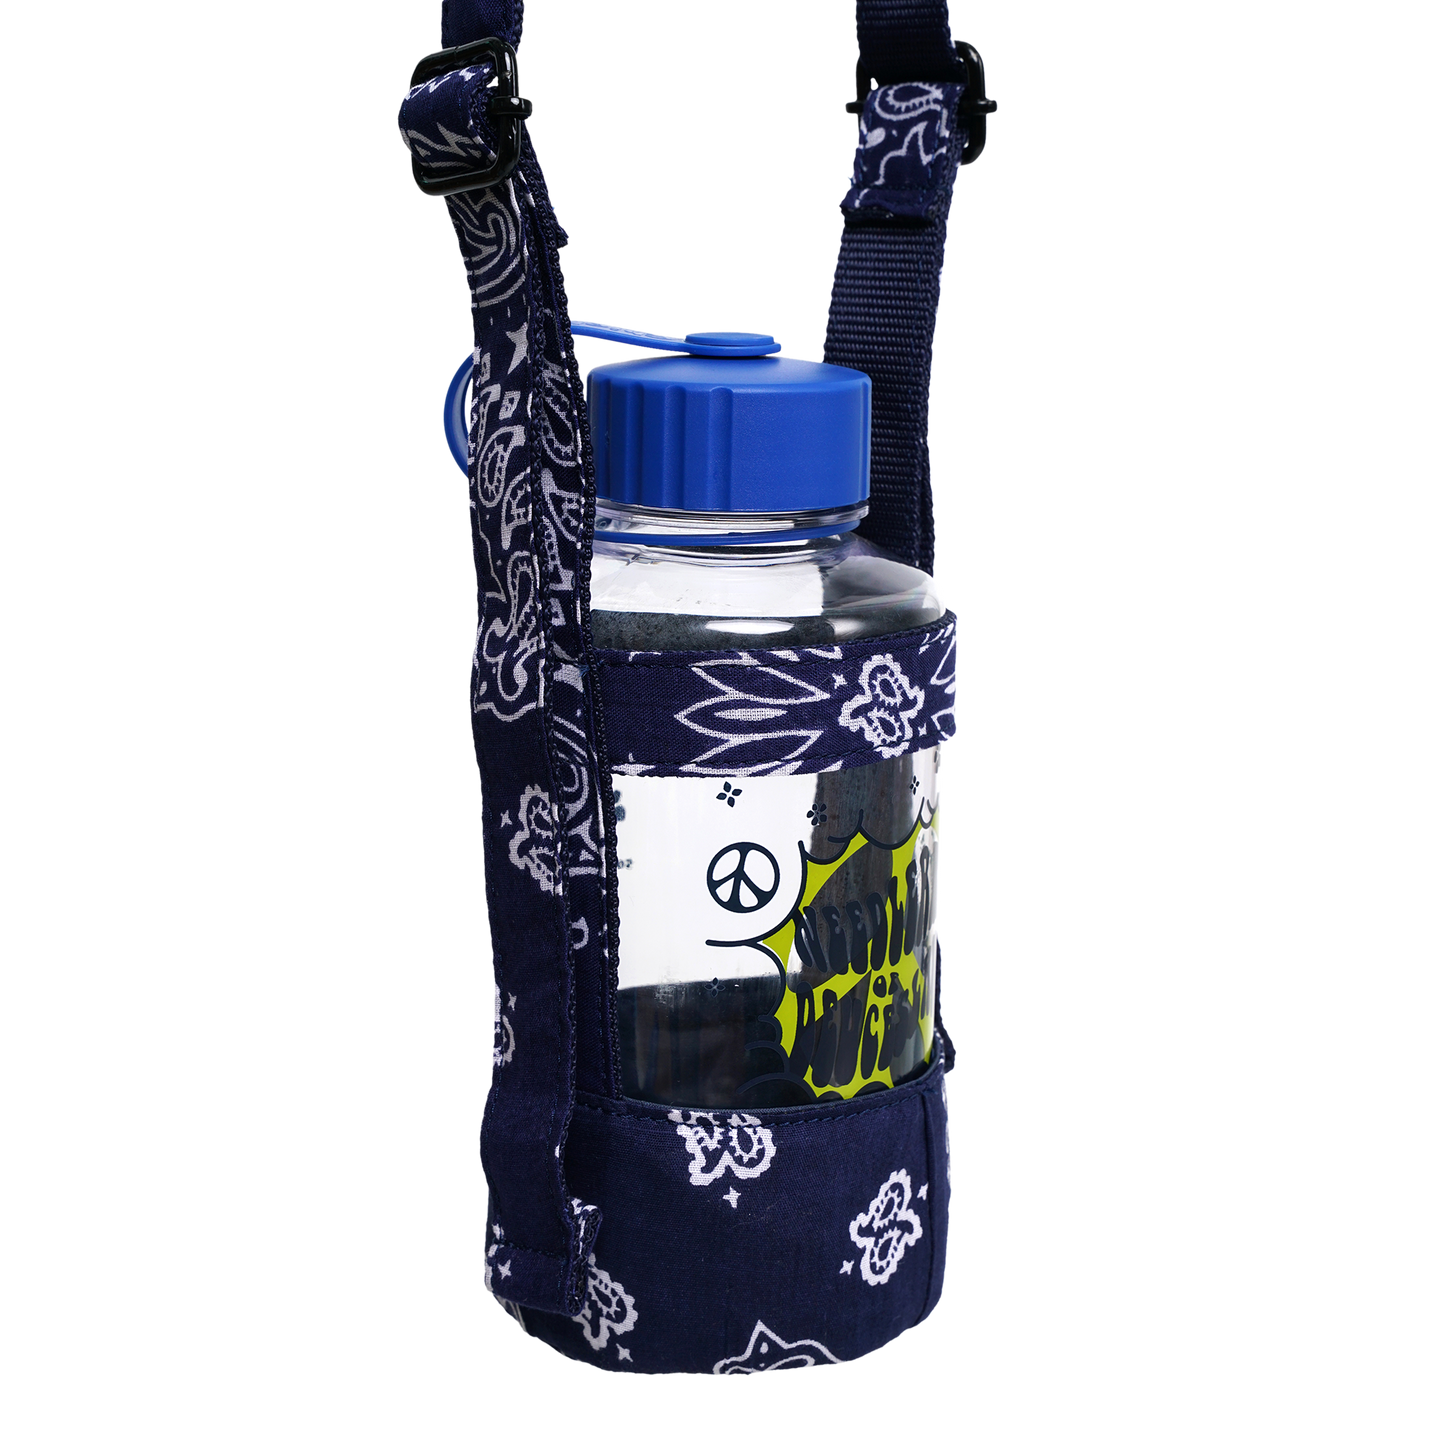 Bandana Bottle Carrier